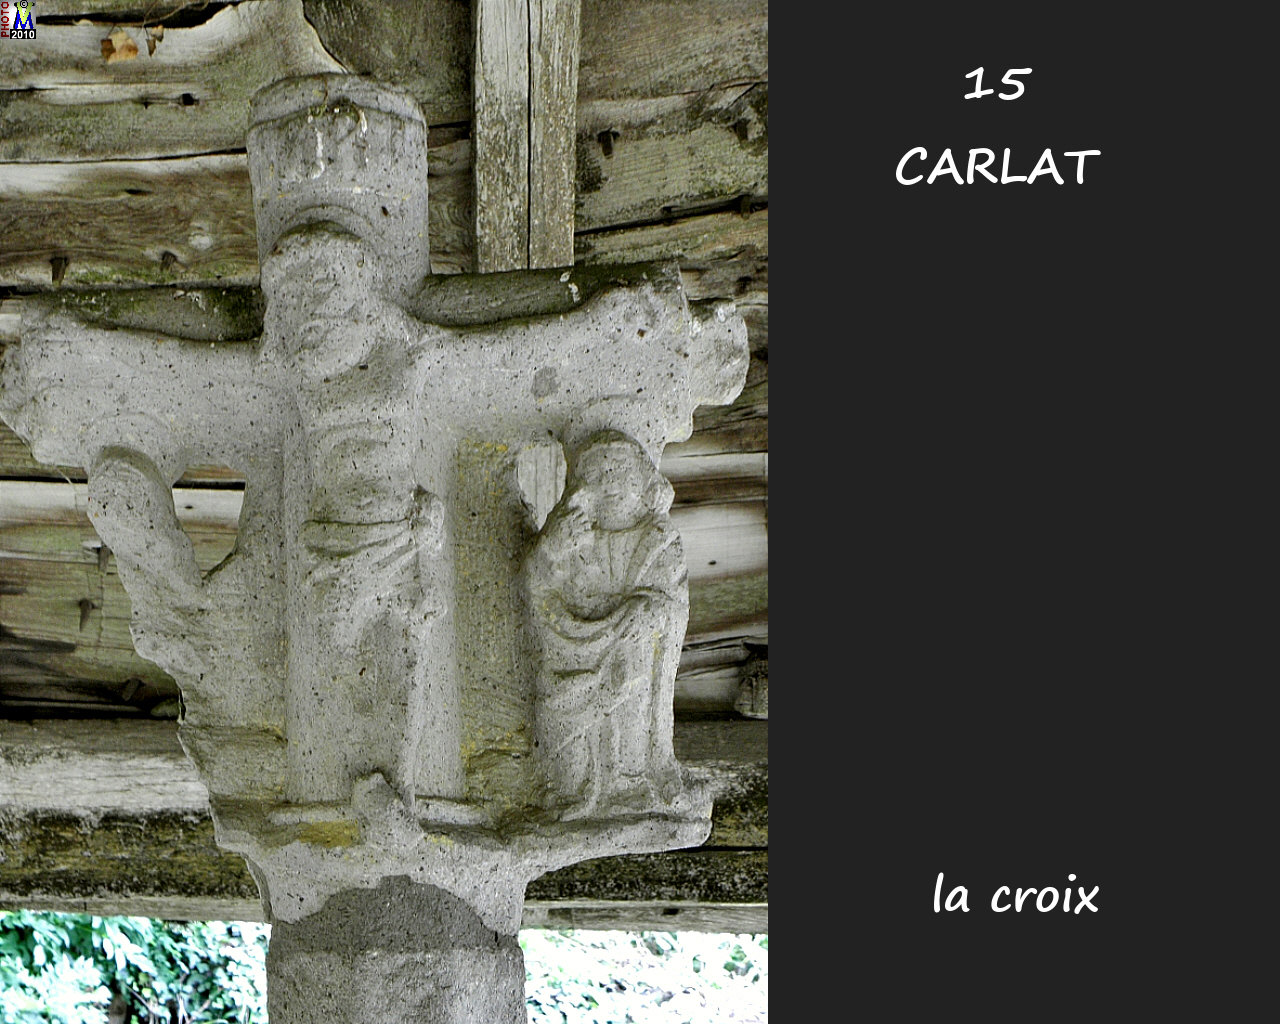 15CARLAT_croix_102.jpg